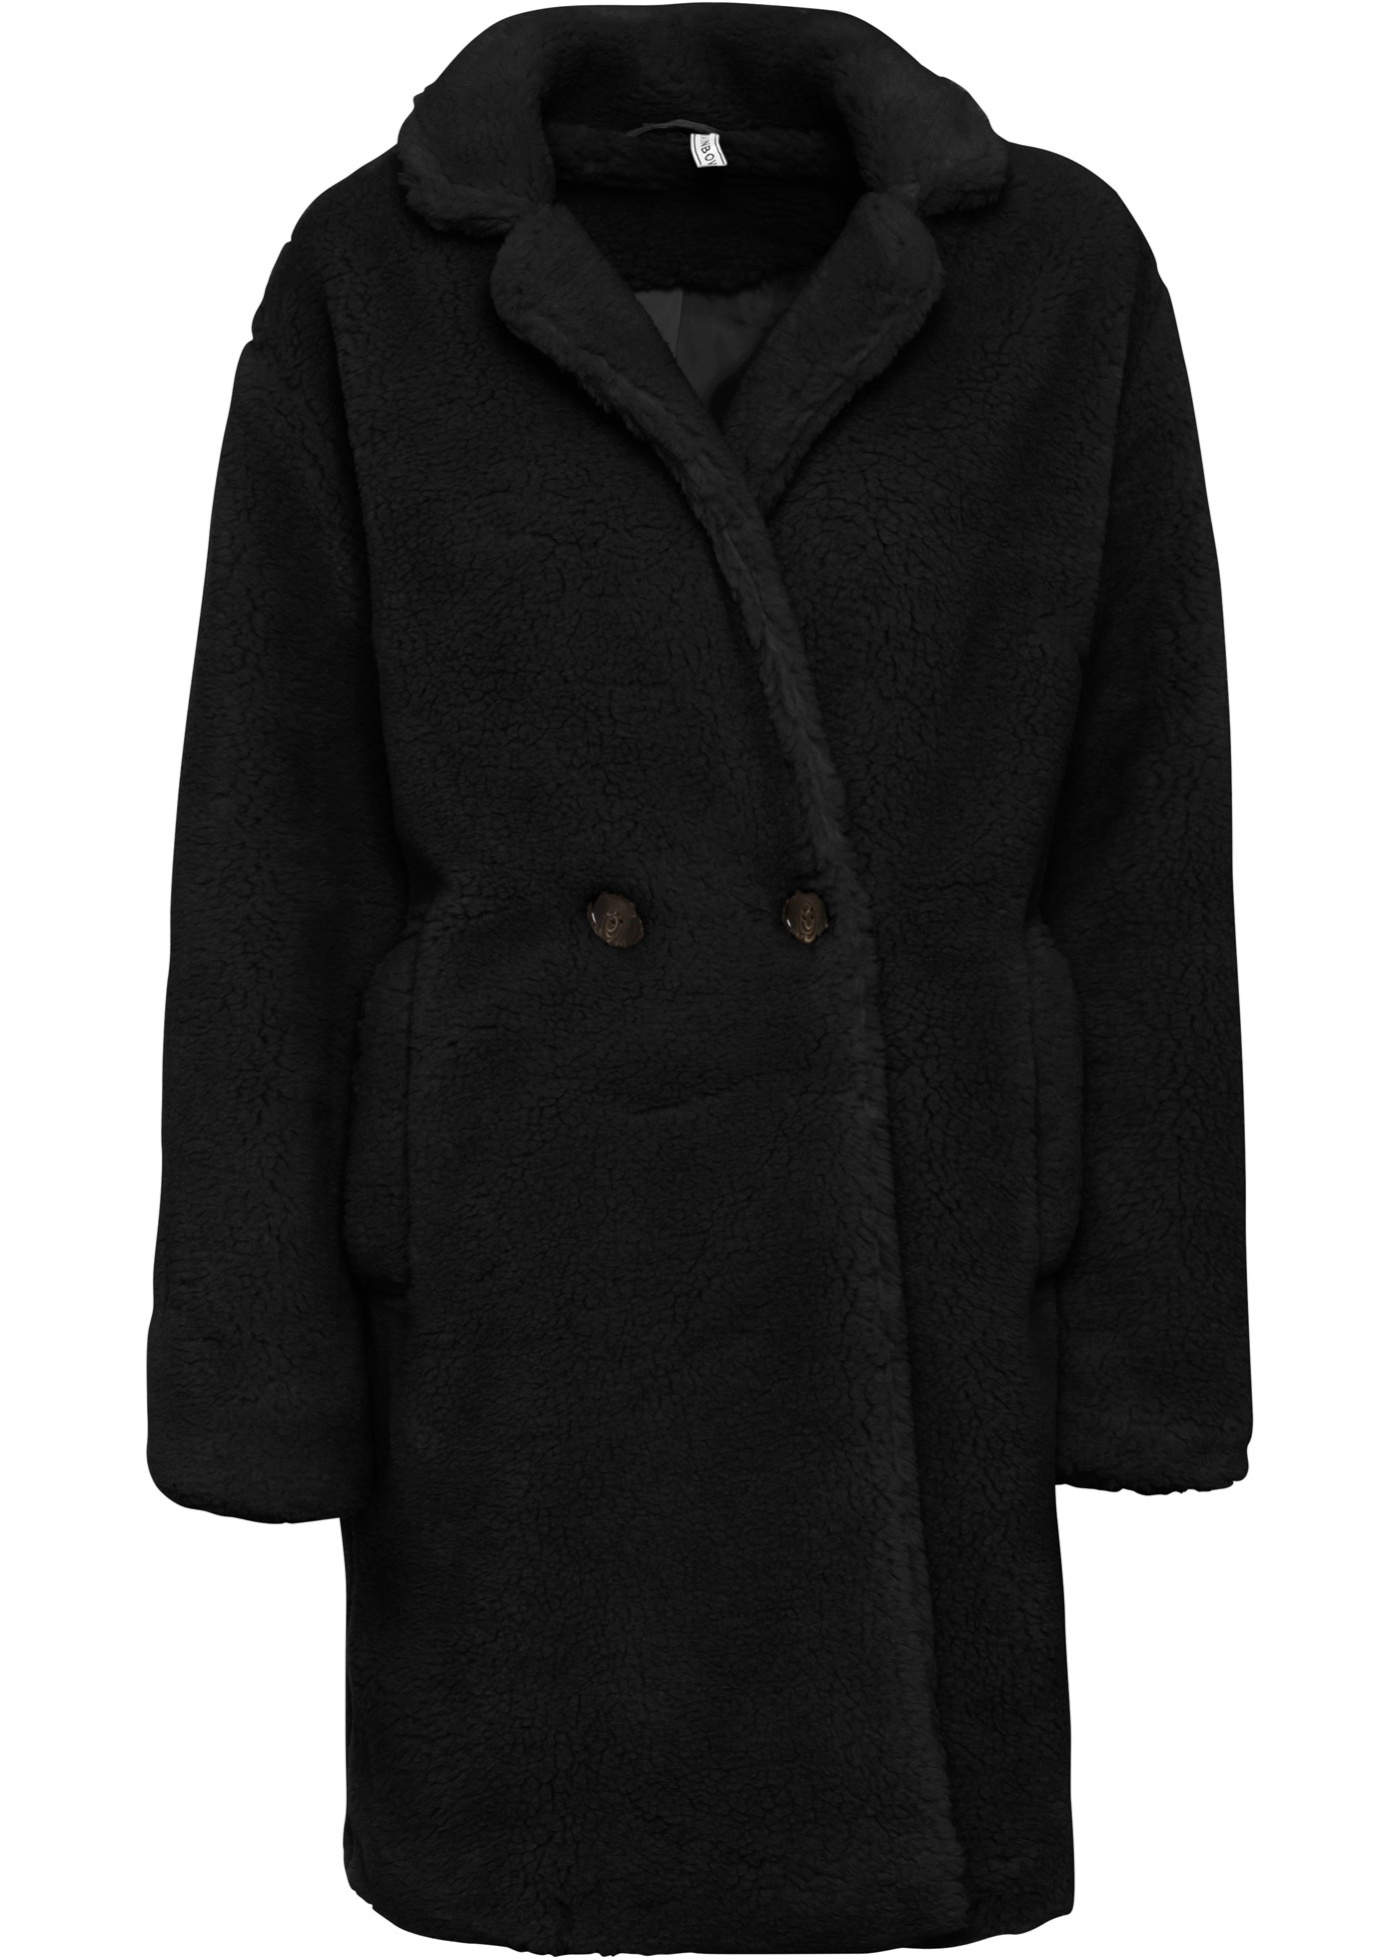 Moderner Wintermantel mit Taschen und Knöpfen (94709195) in schwarz